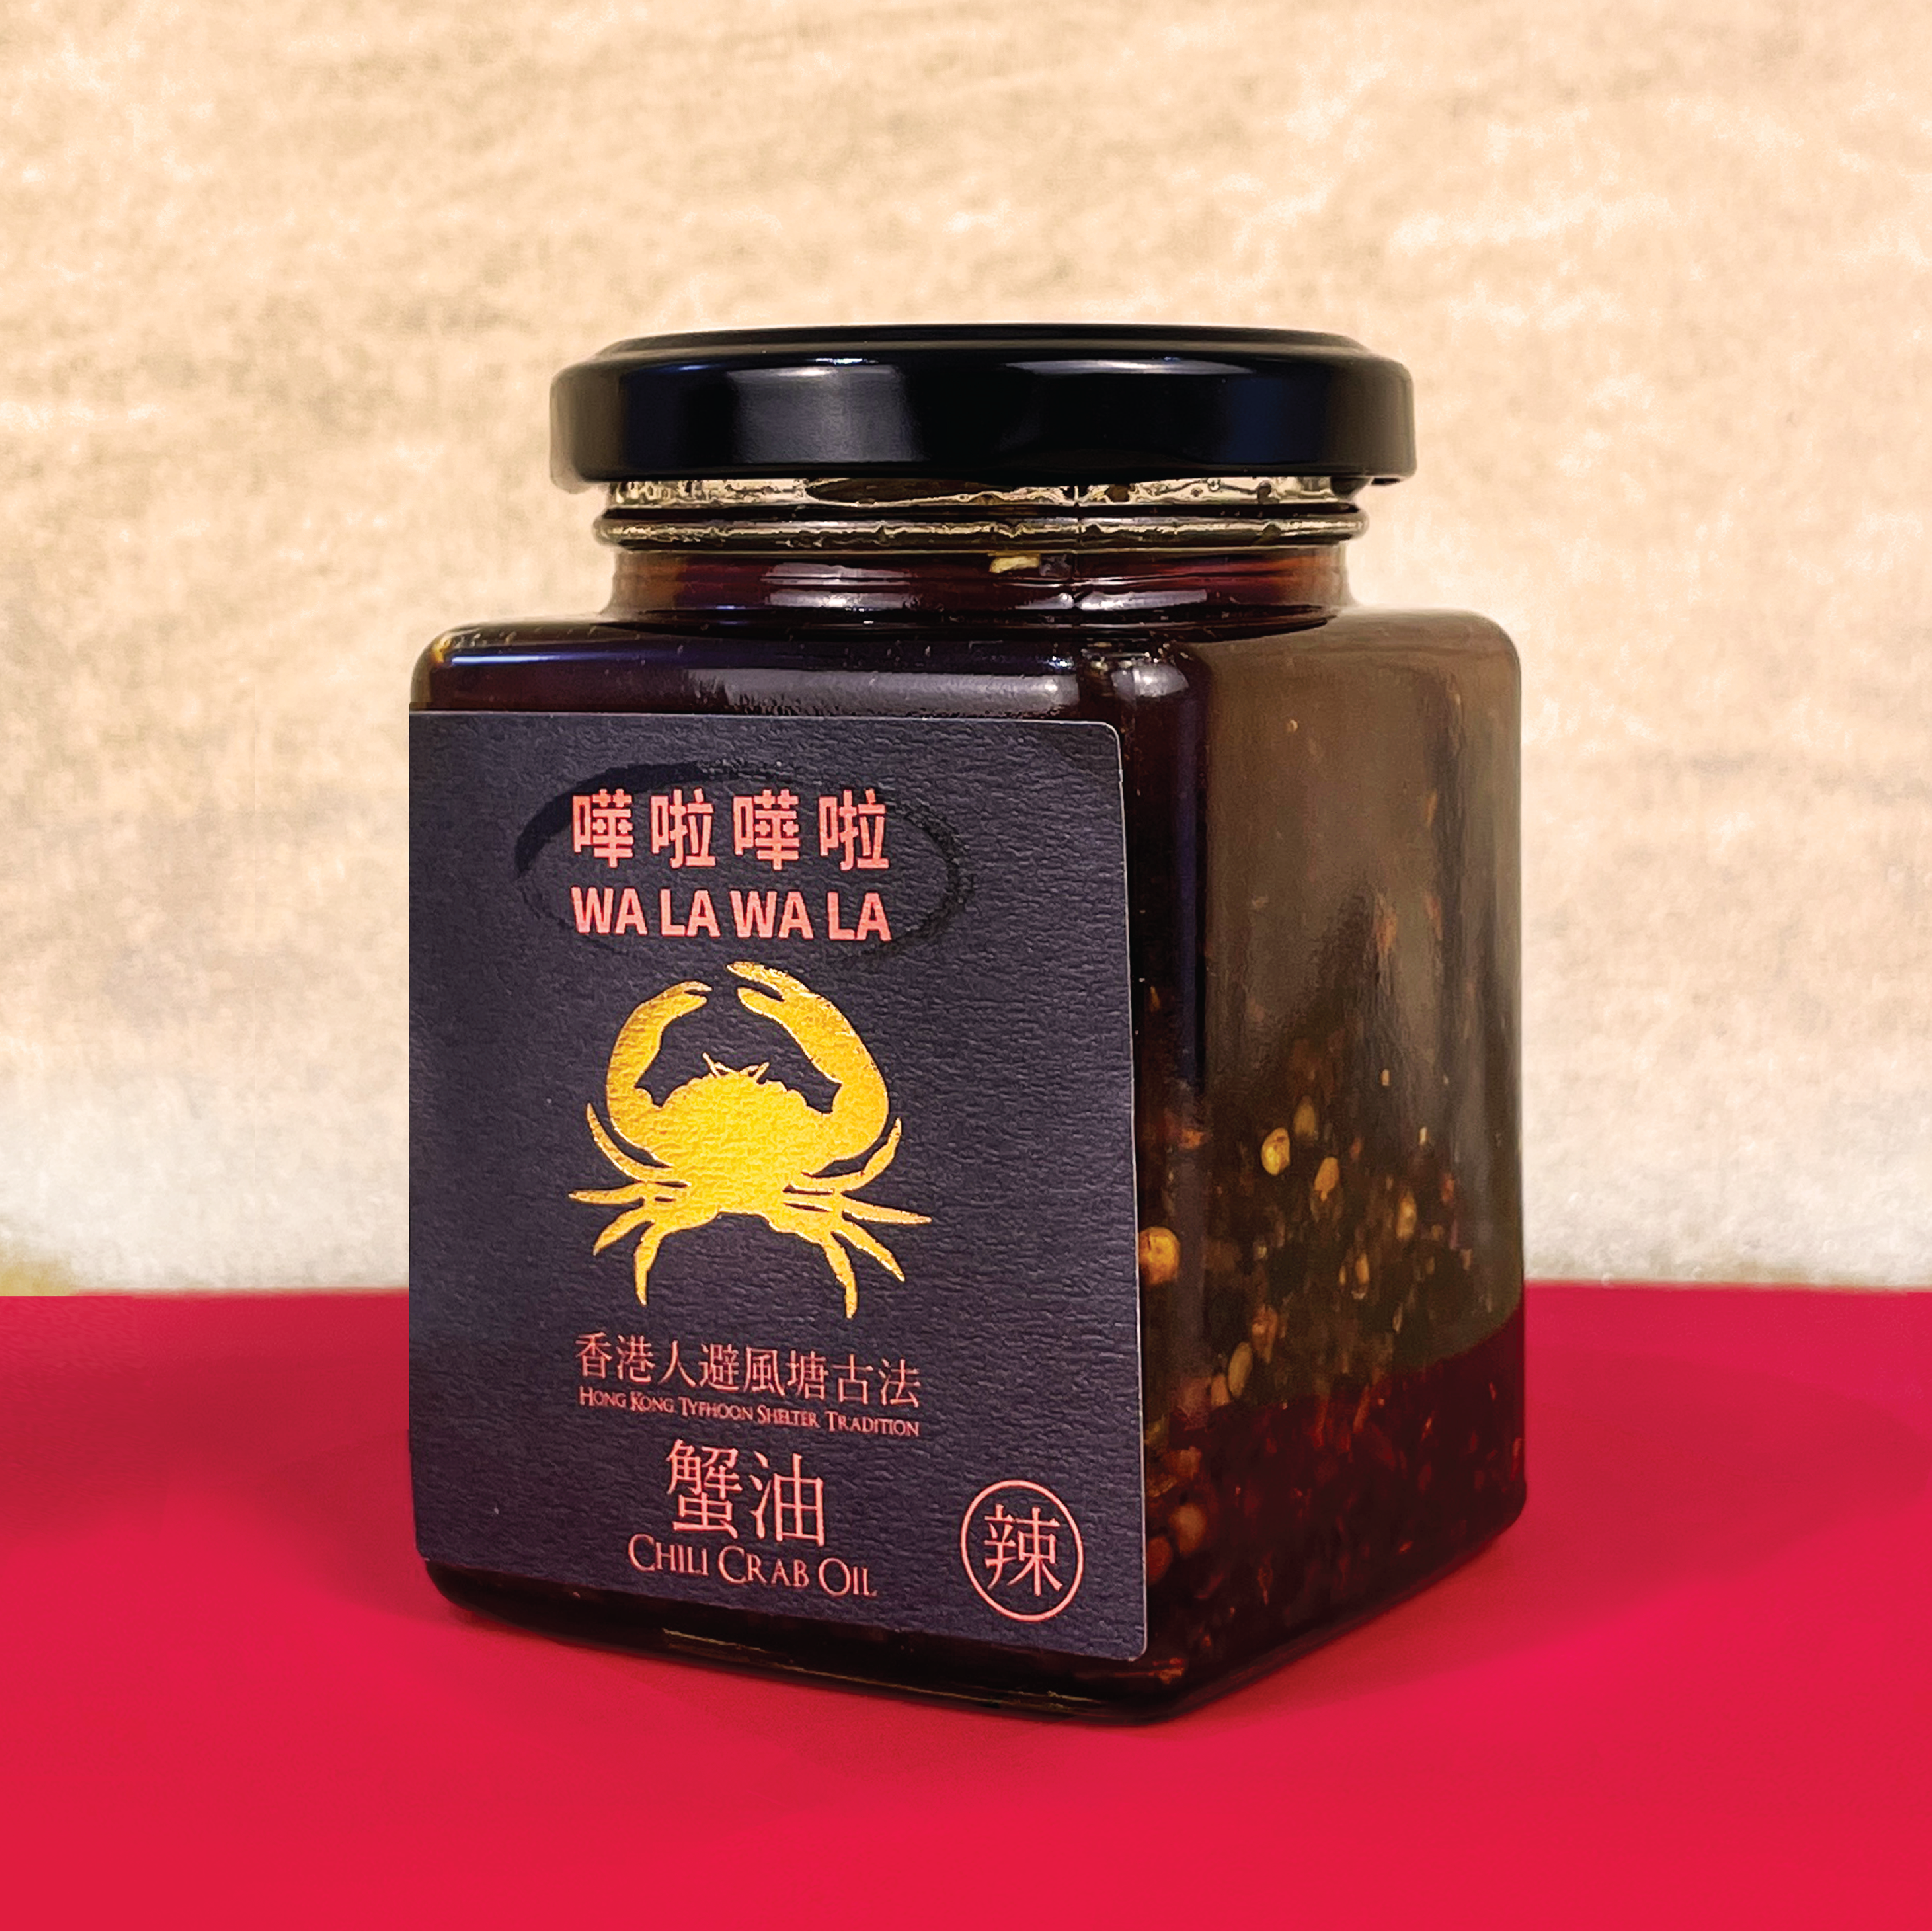 Walawala Chili Crab Oil - Hot